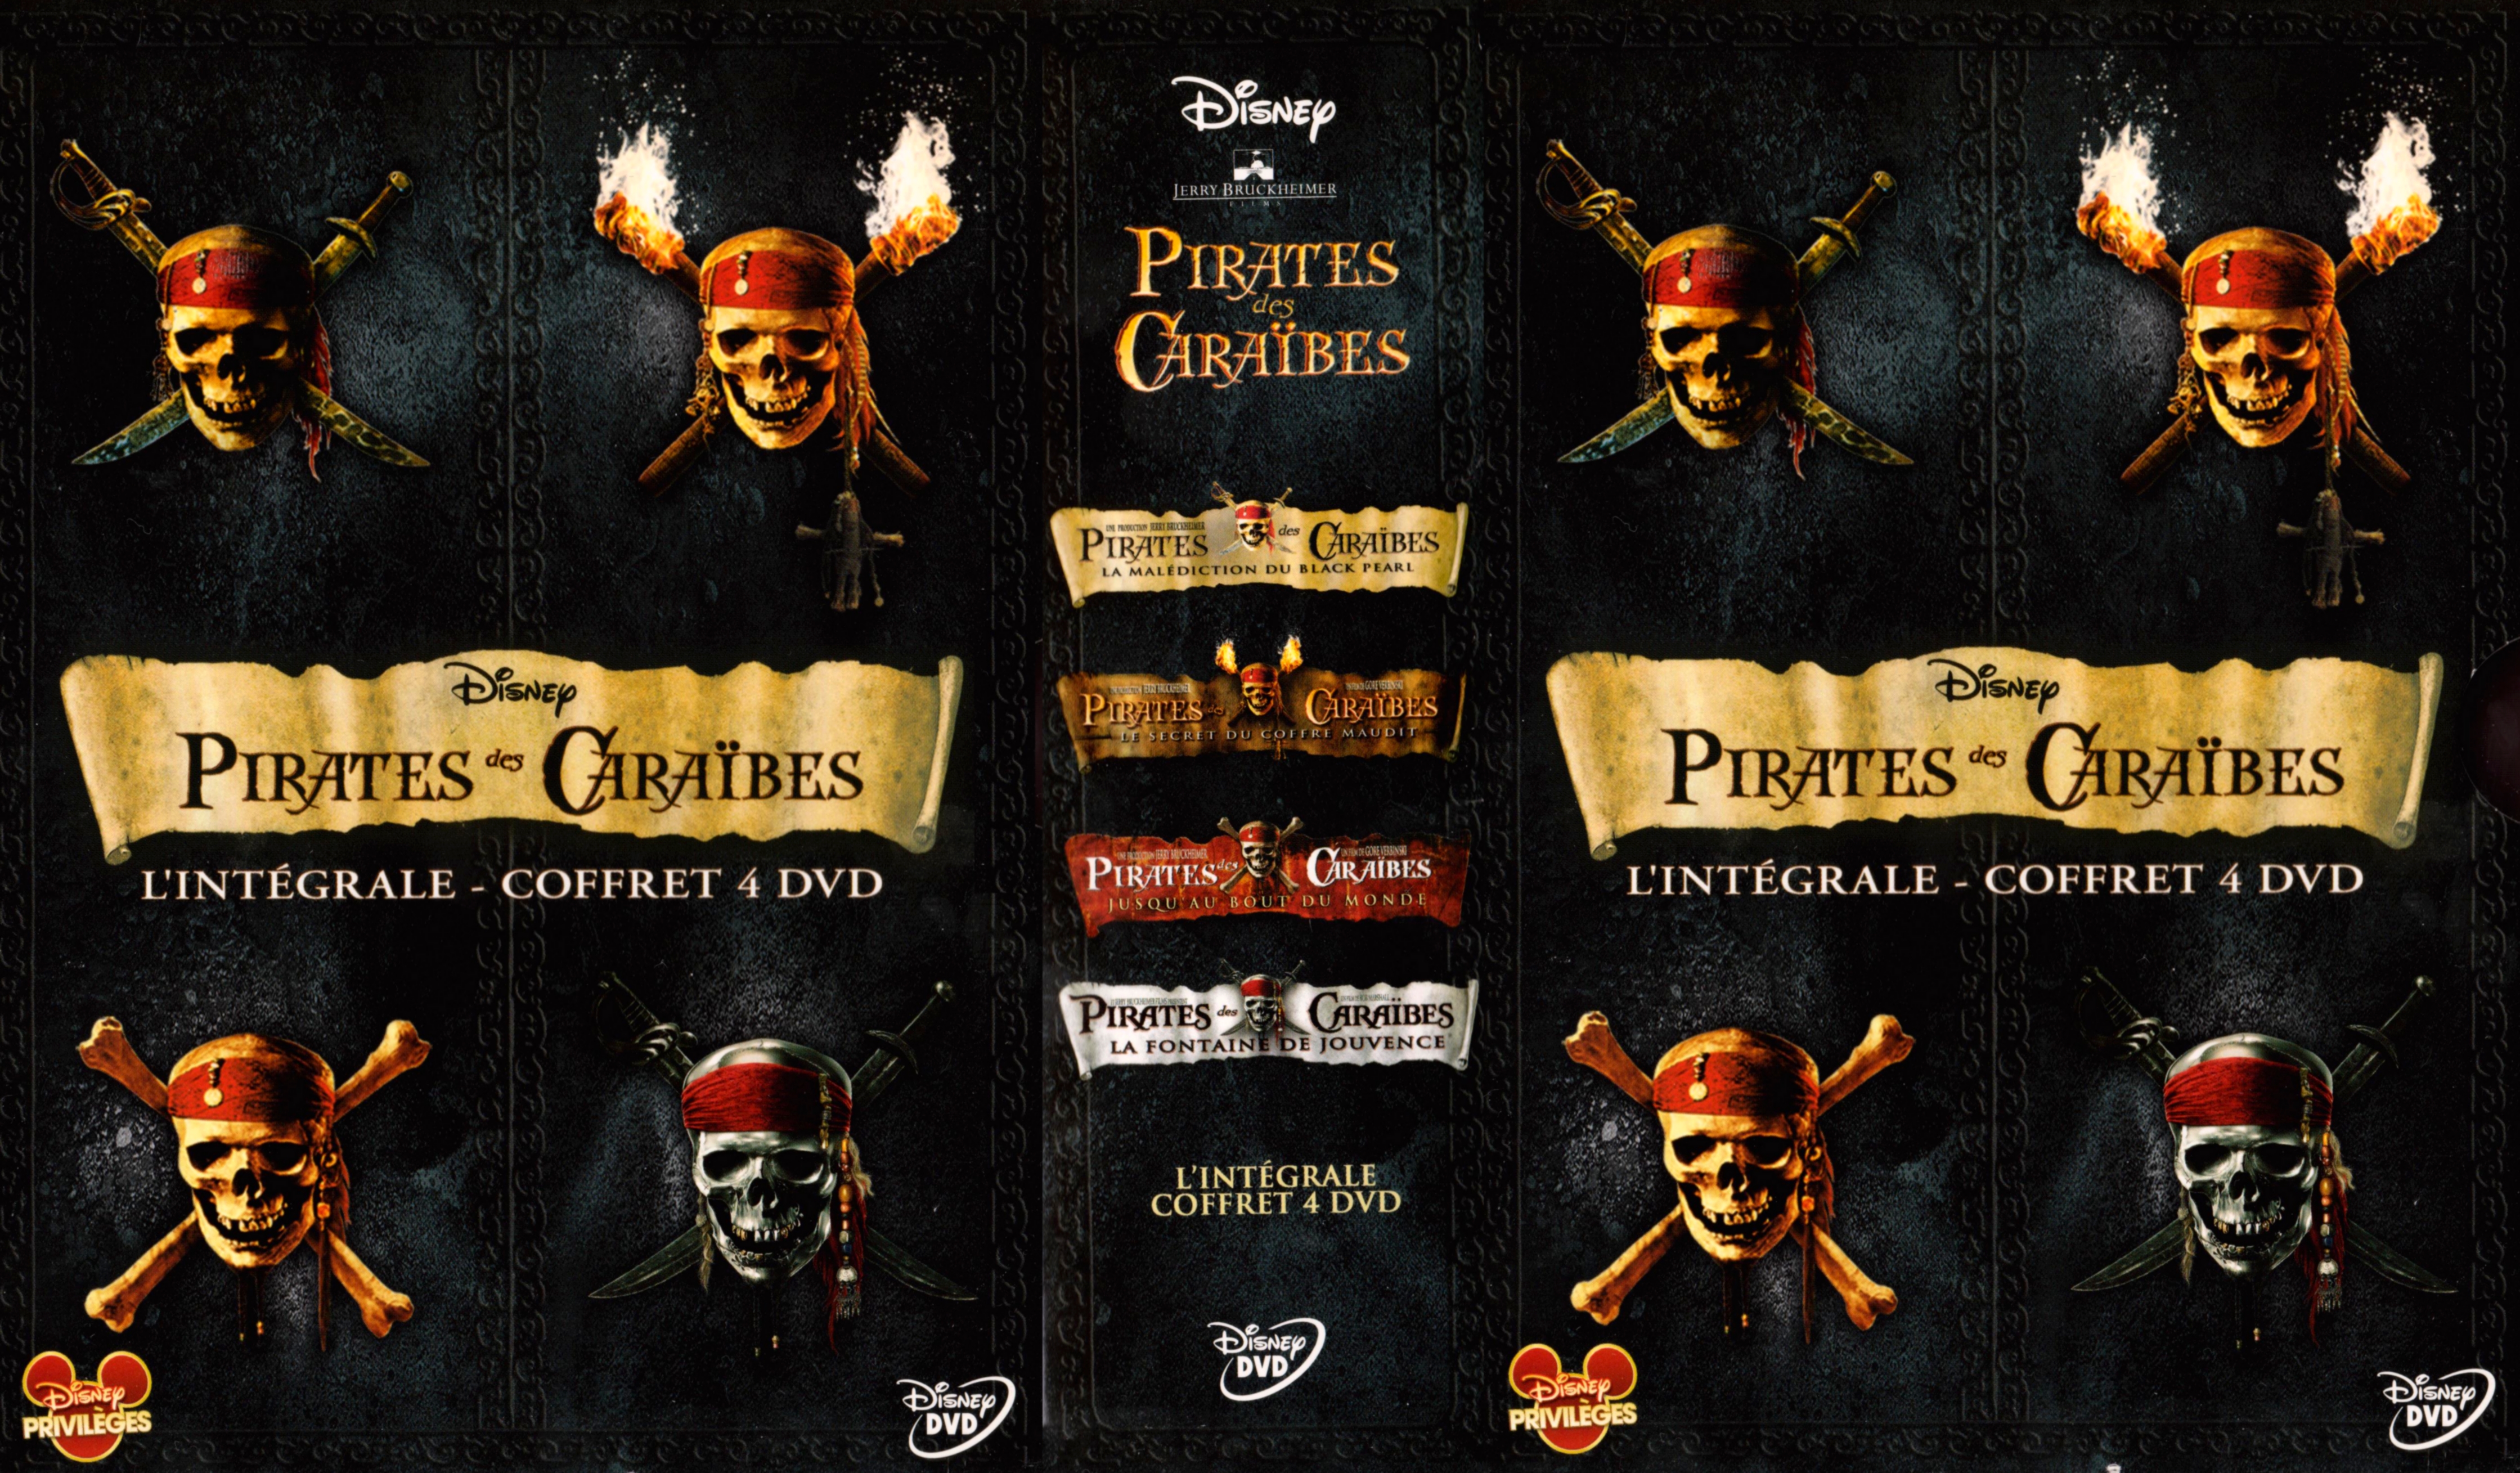 Jaquette DVD Pirates des caraibes Intgrale COFFRET